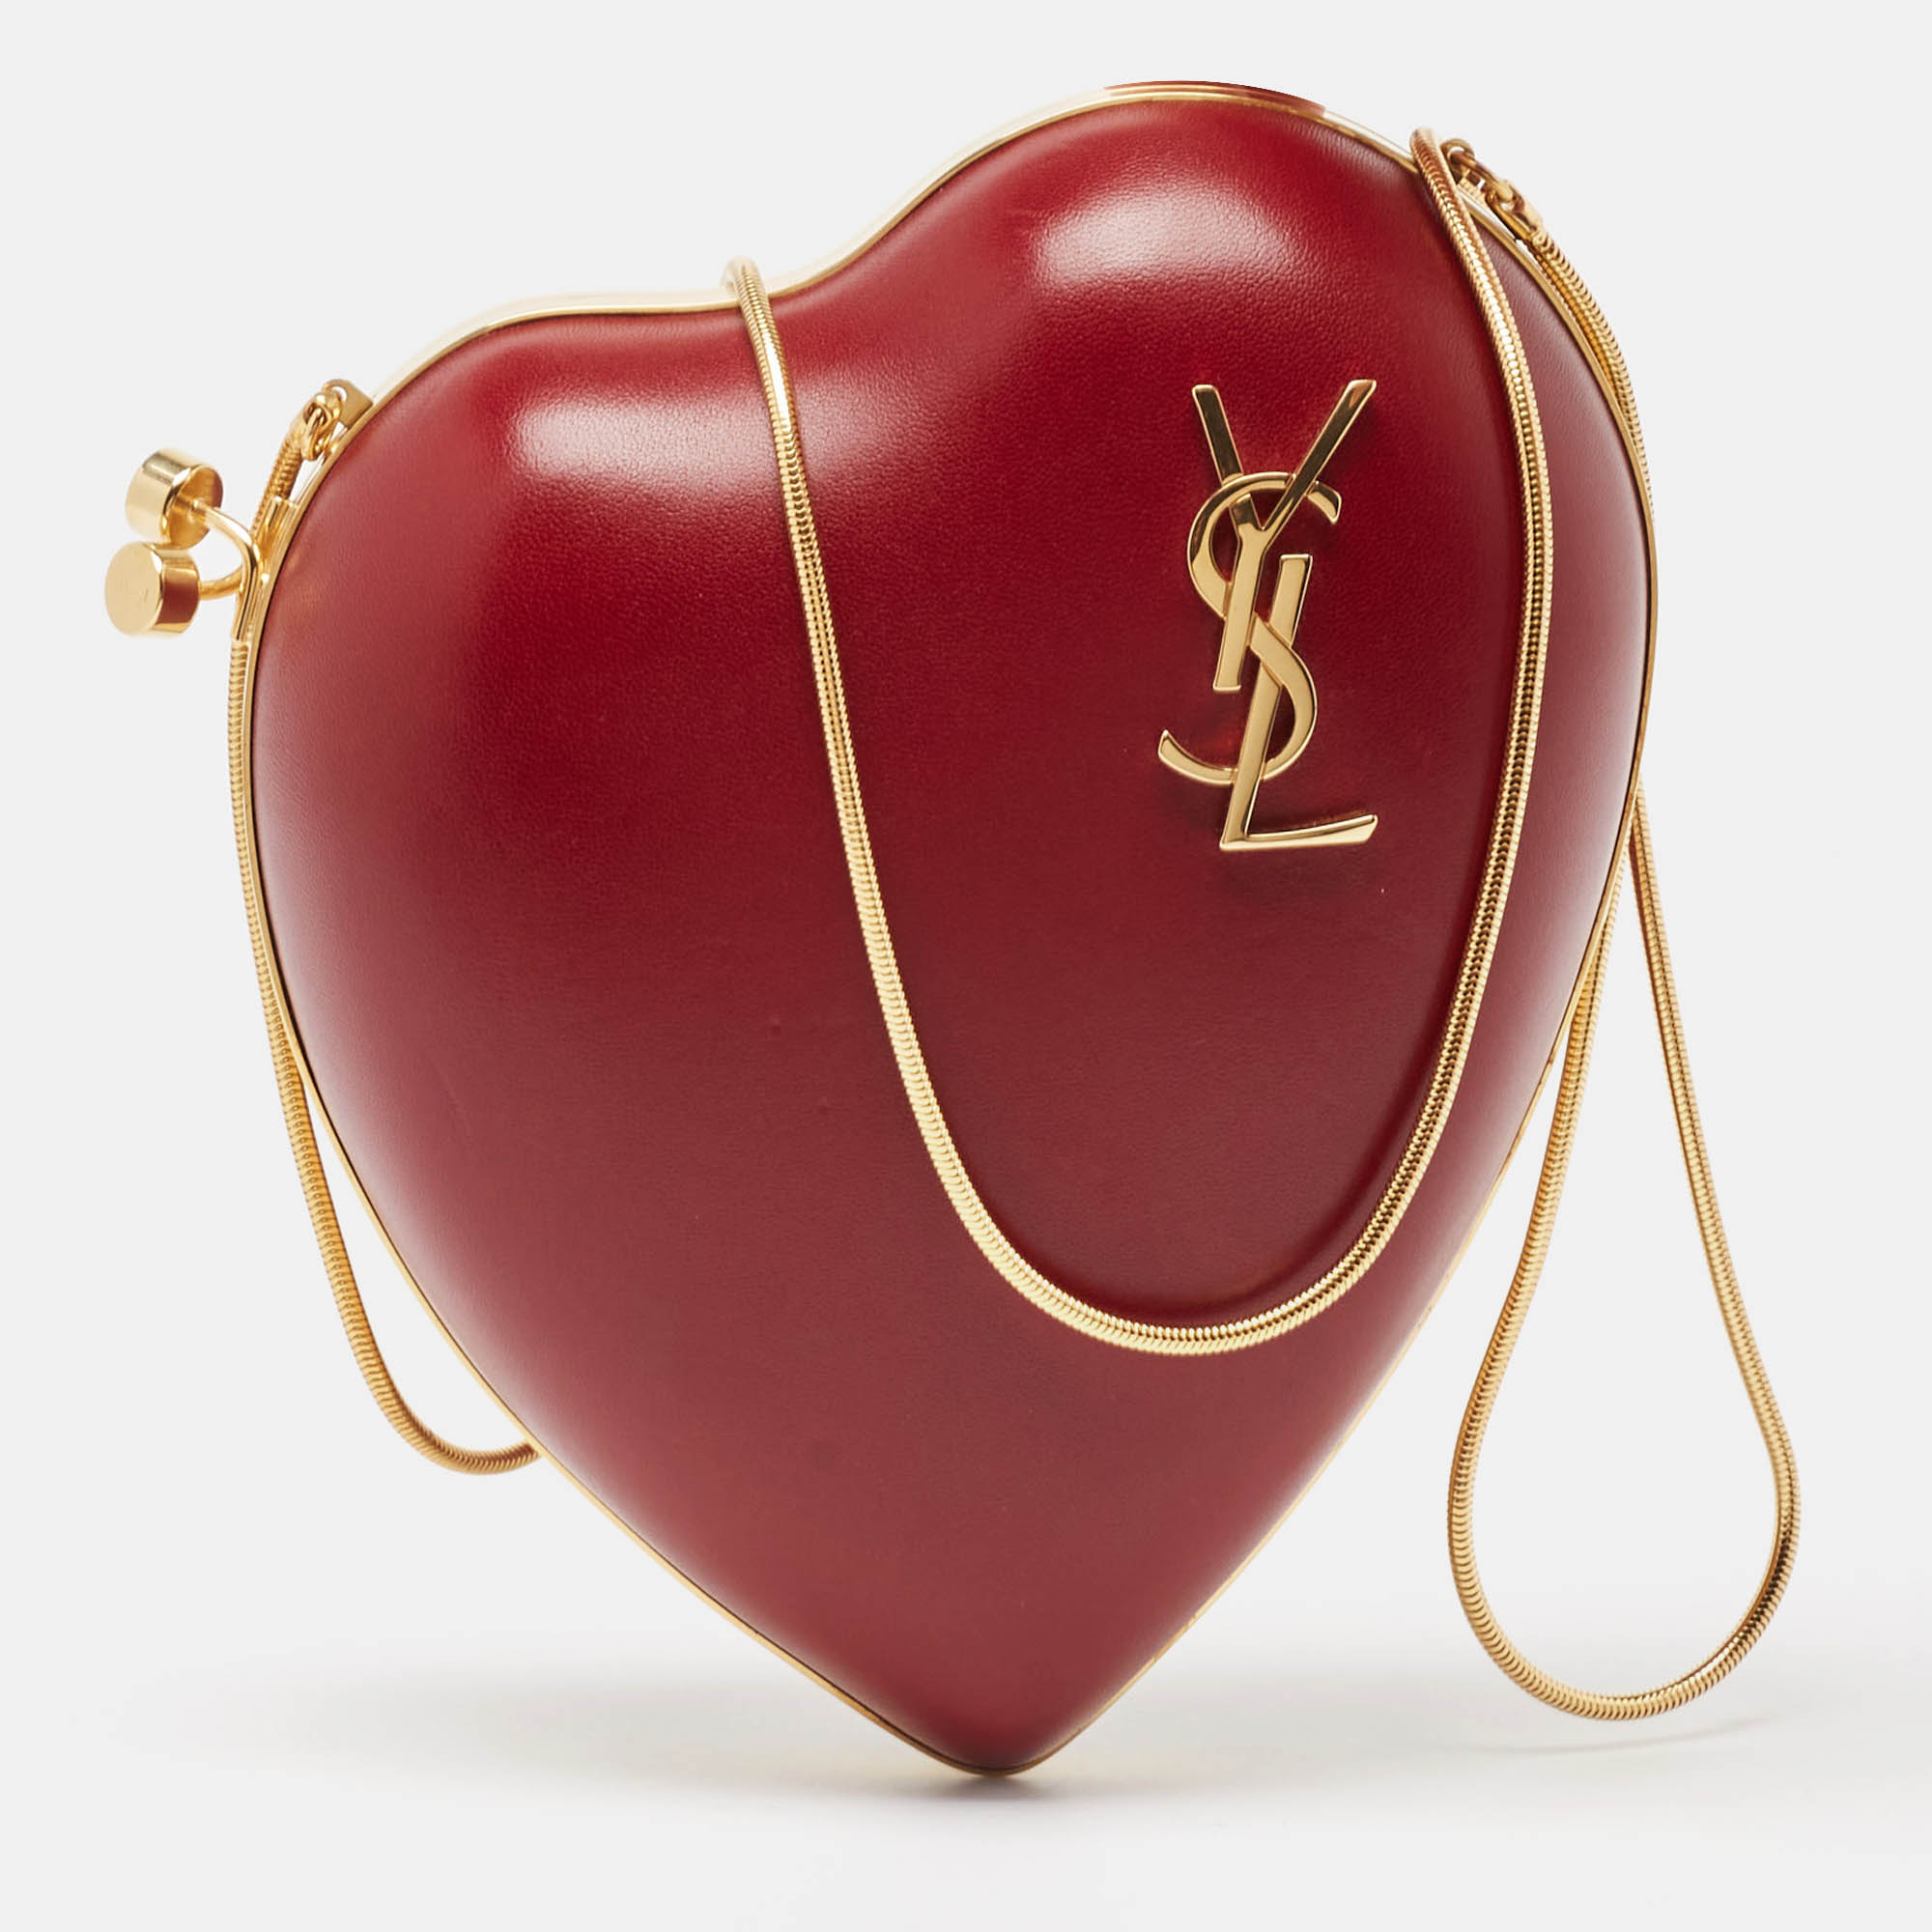 Saint laurent paris saint laurent red leather love box chain bag